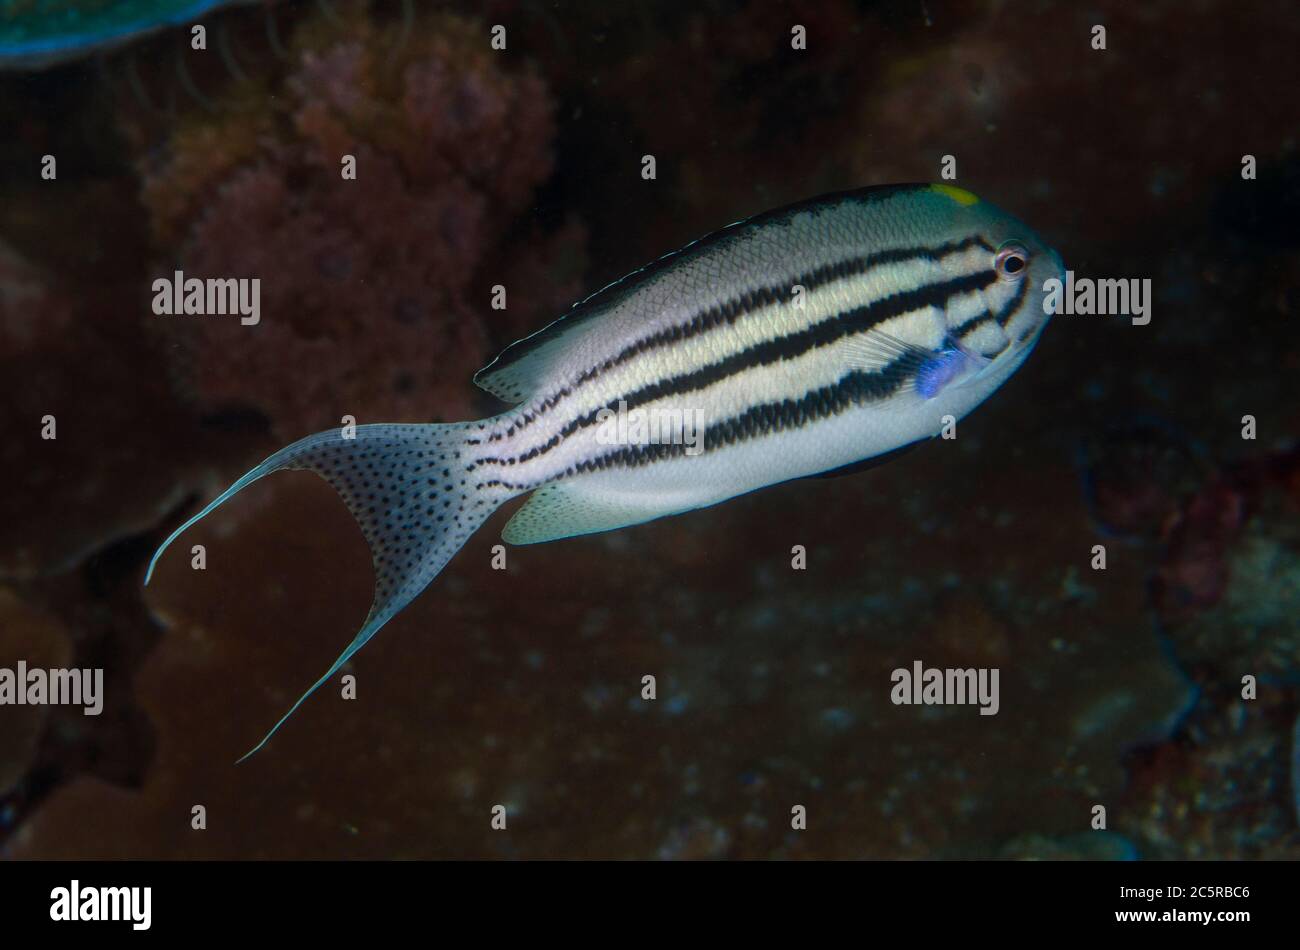 Male Blackstriped Angelfish, Genicanthus lamarck, Batu Rufos dive site, Penemu Island, Dampier Strait, Raja Ampat, Indonesia Stock Photo